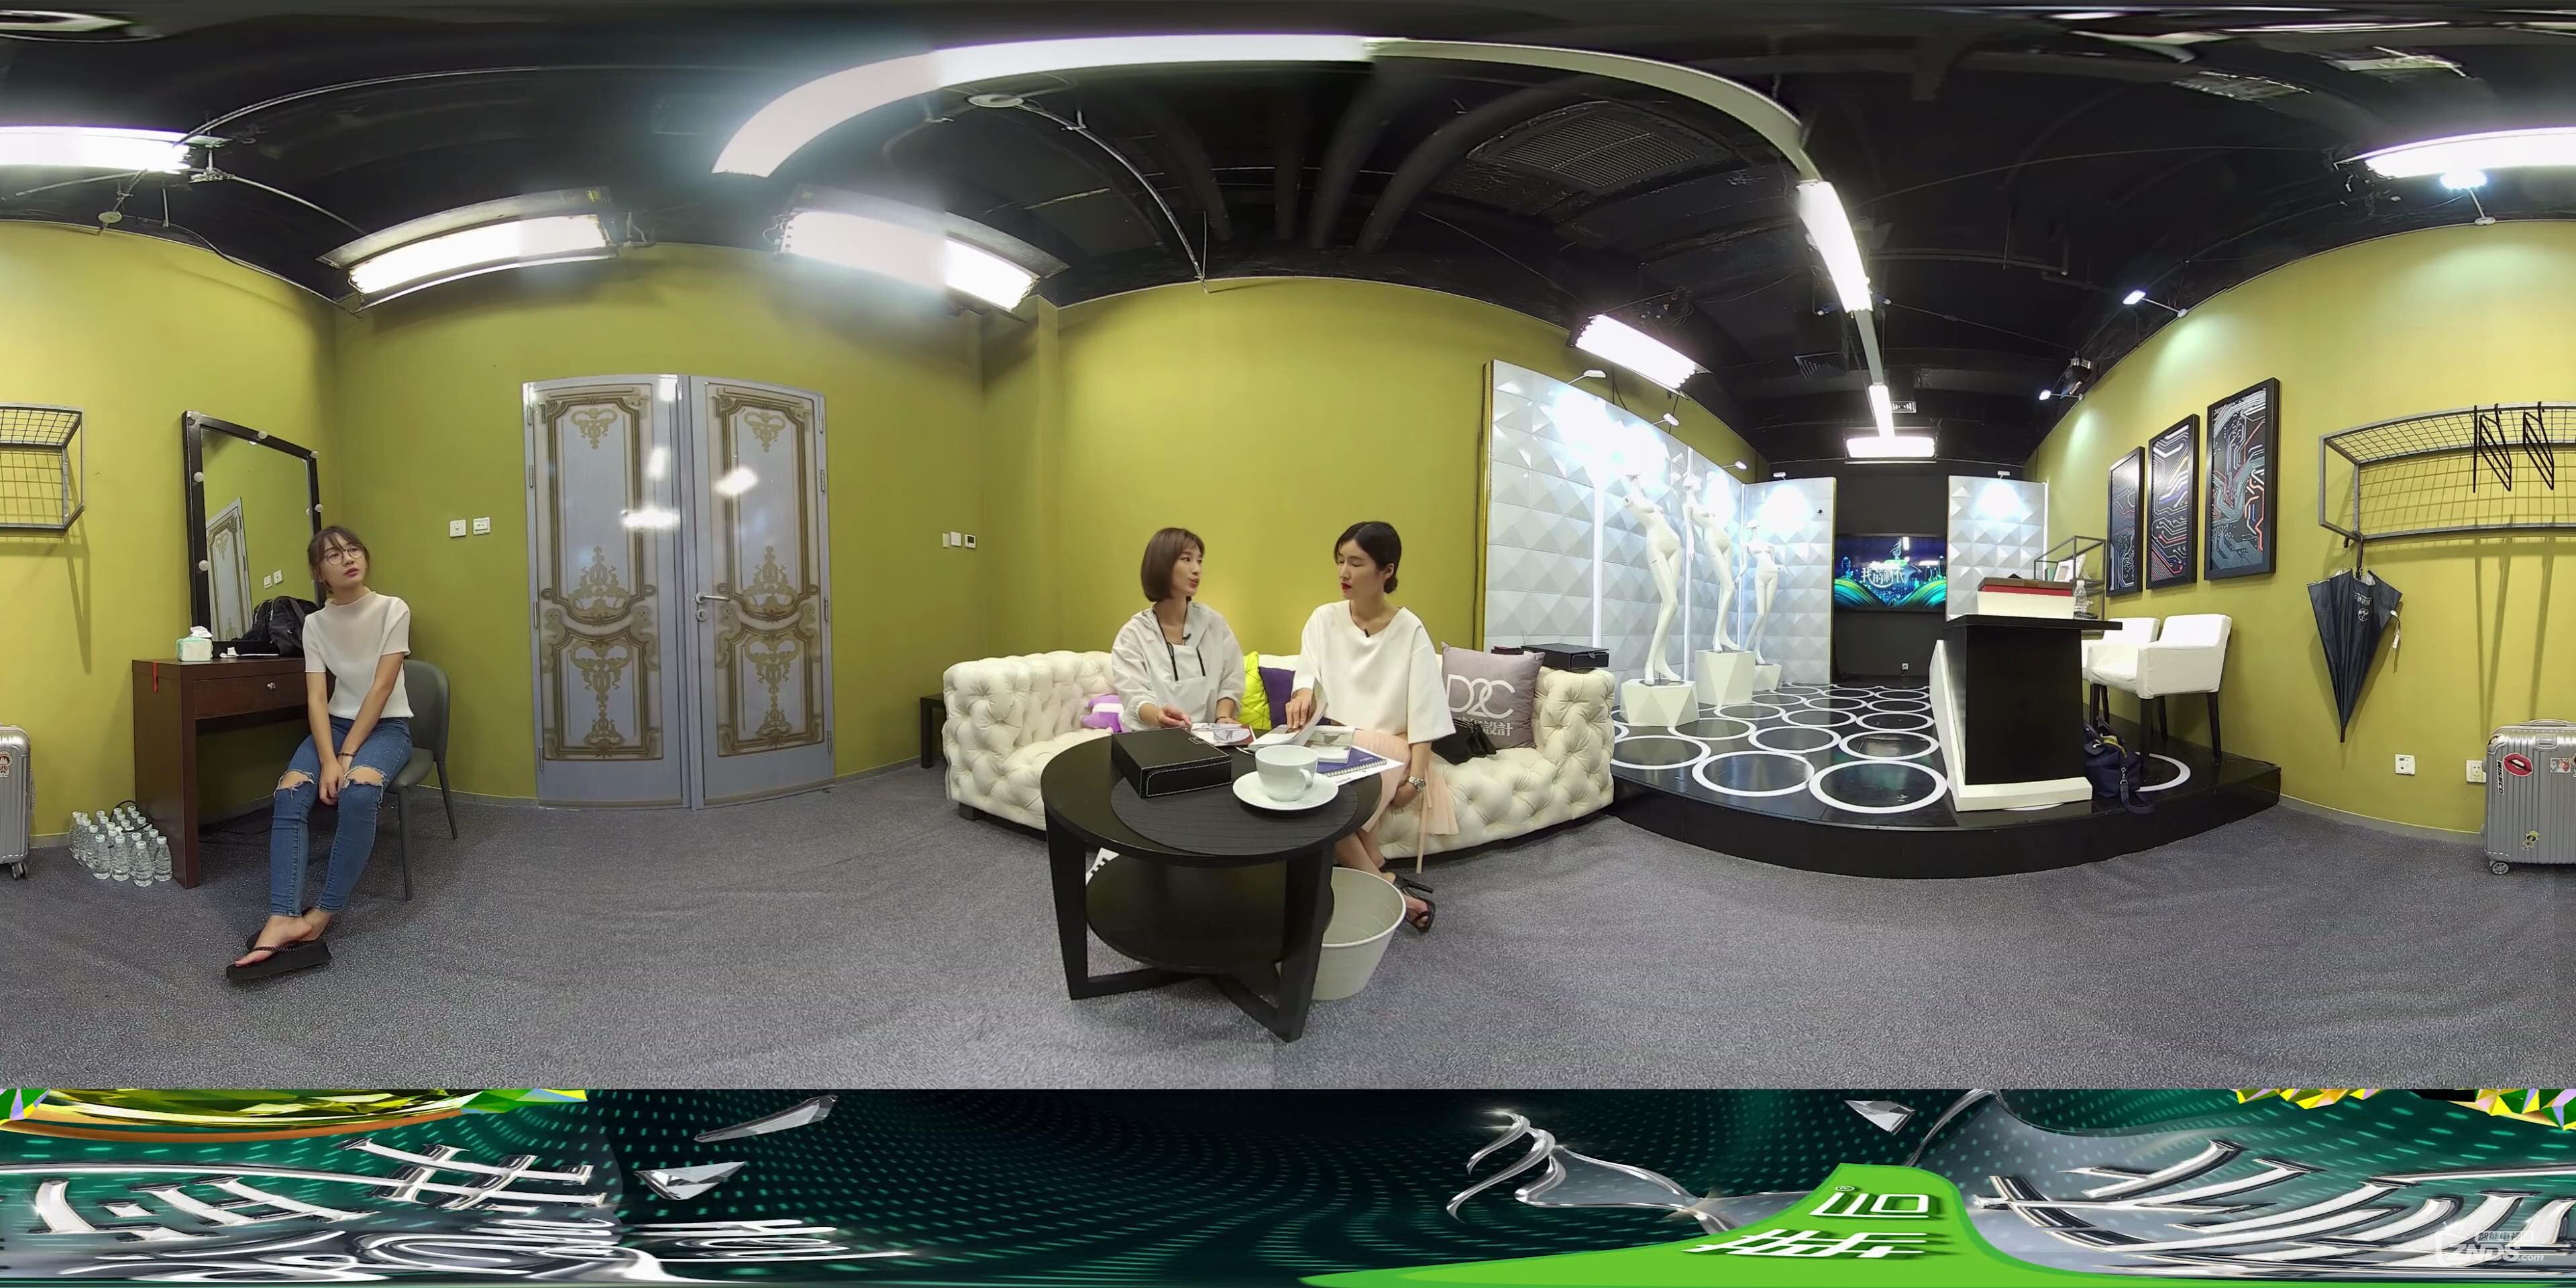 【360度VR全景视频】王鸥魅力来袭:汪曼春处